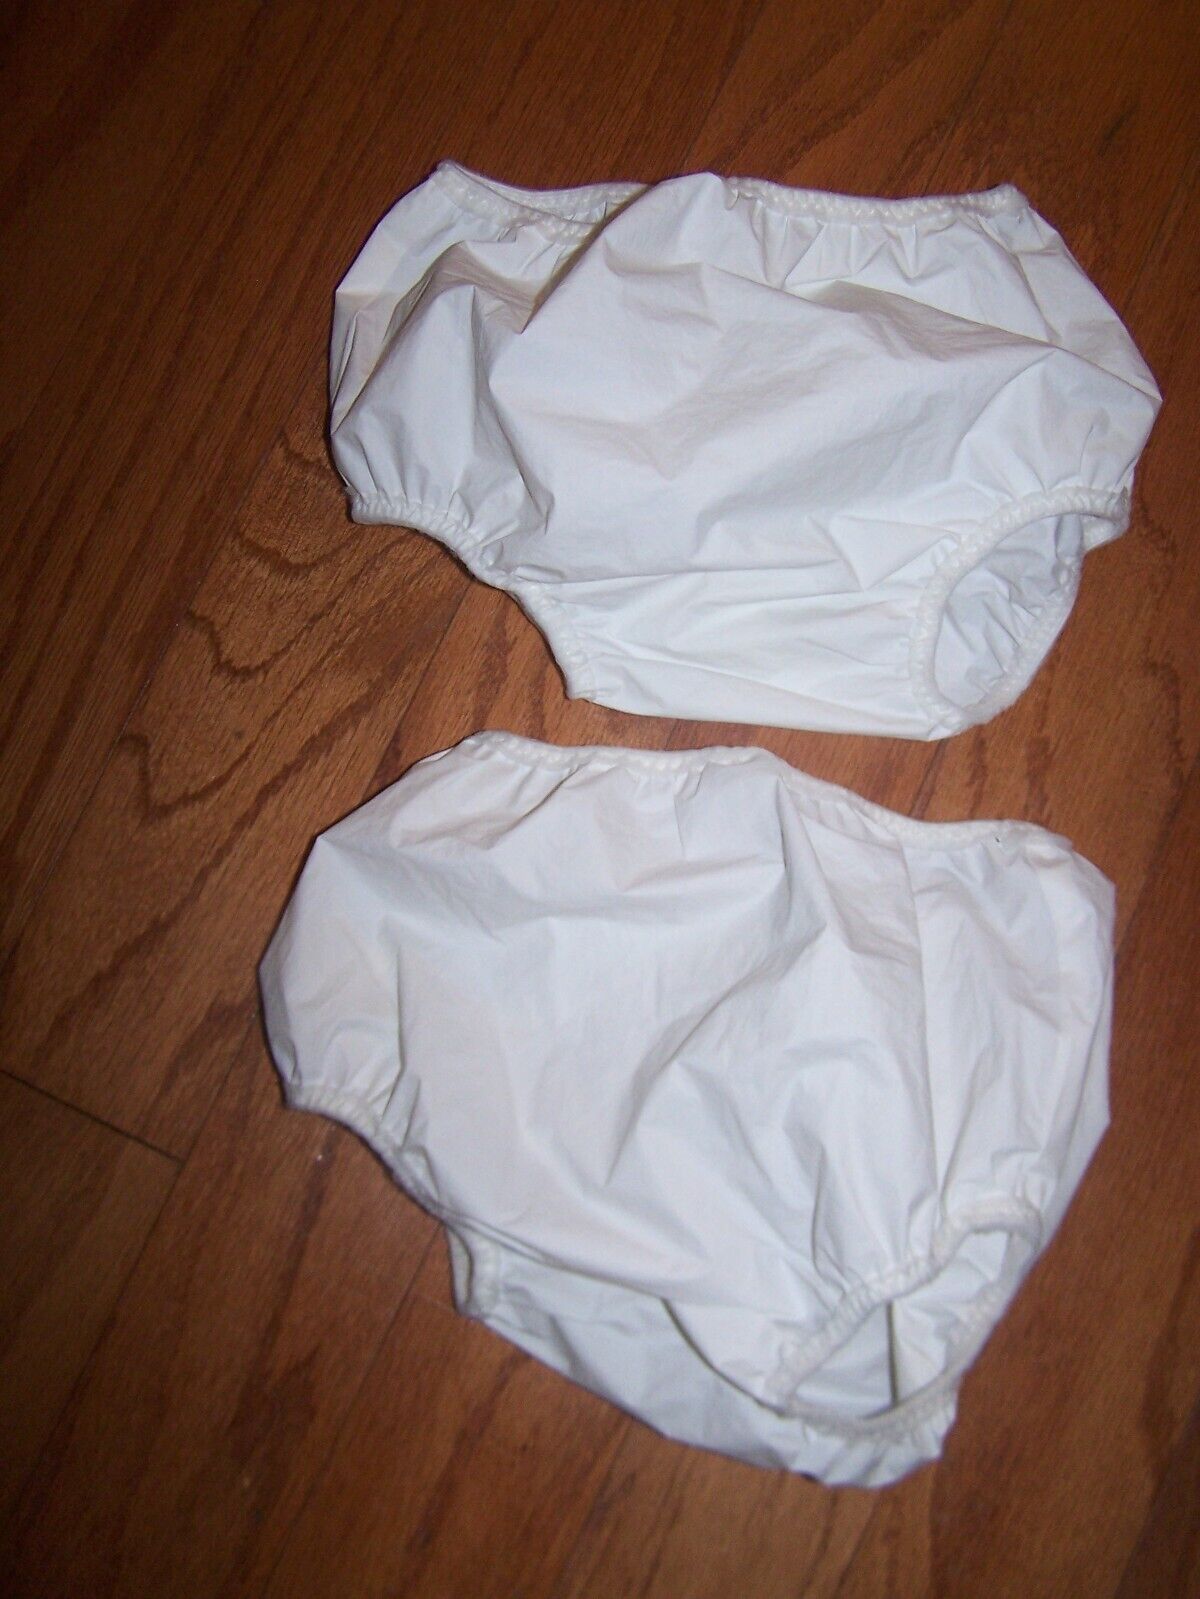 2 Gerber Waterproof Pant Size 2t Training Diaper Cover